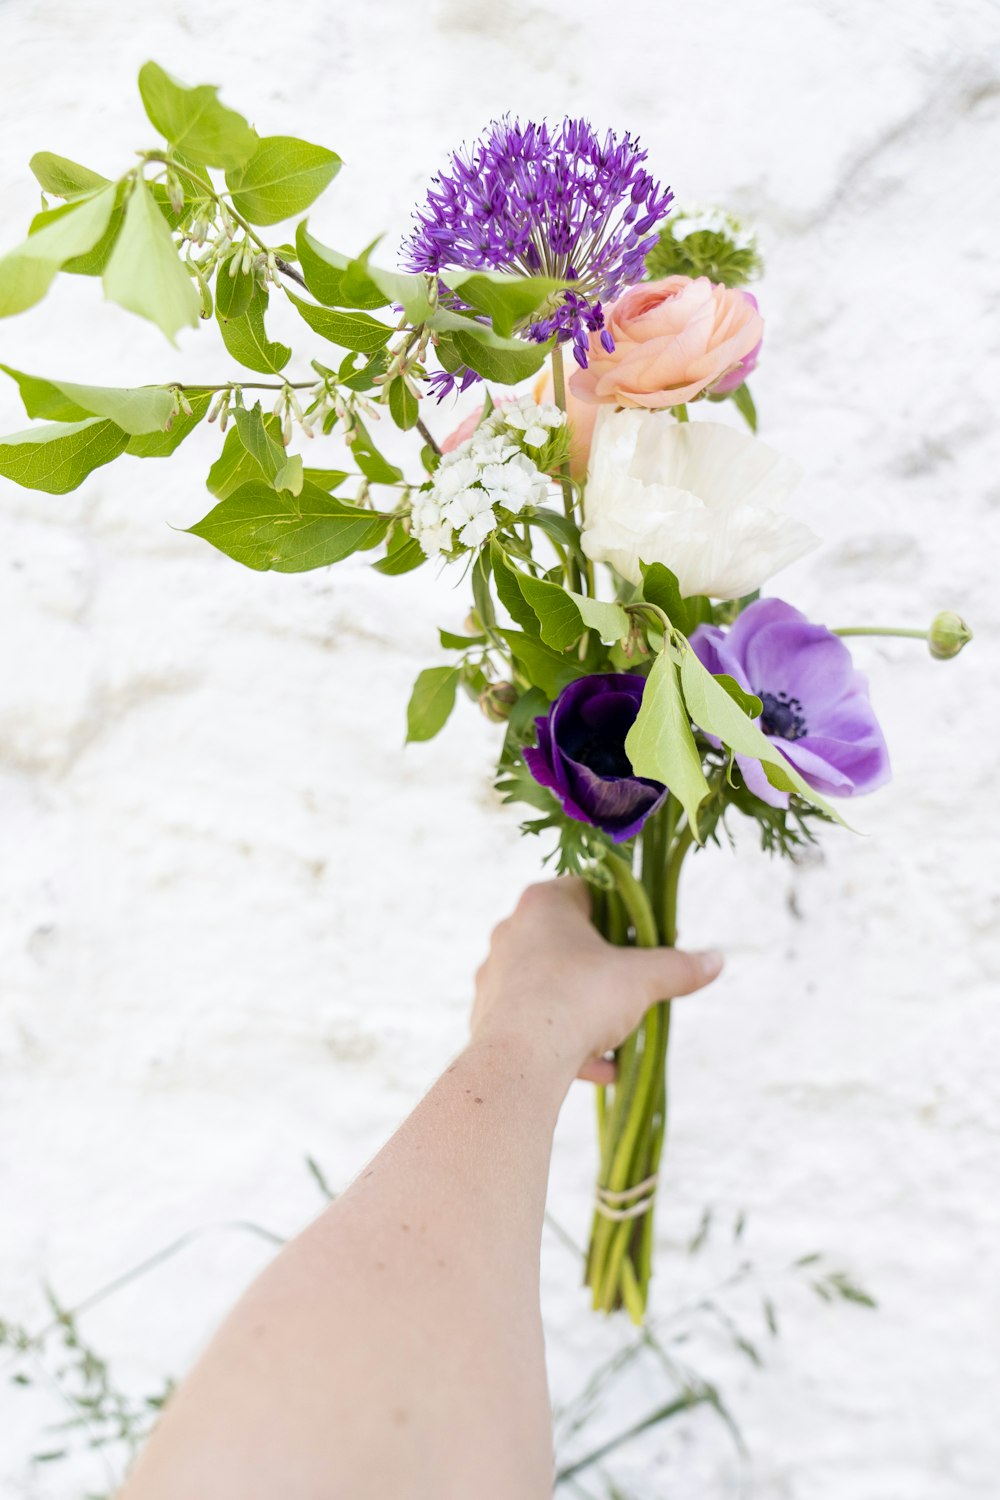 보라색과 흰색 꽃을 들고 있는 사람